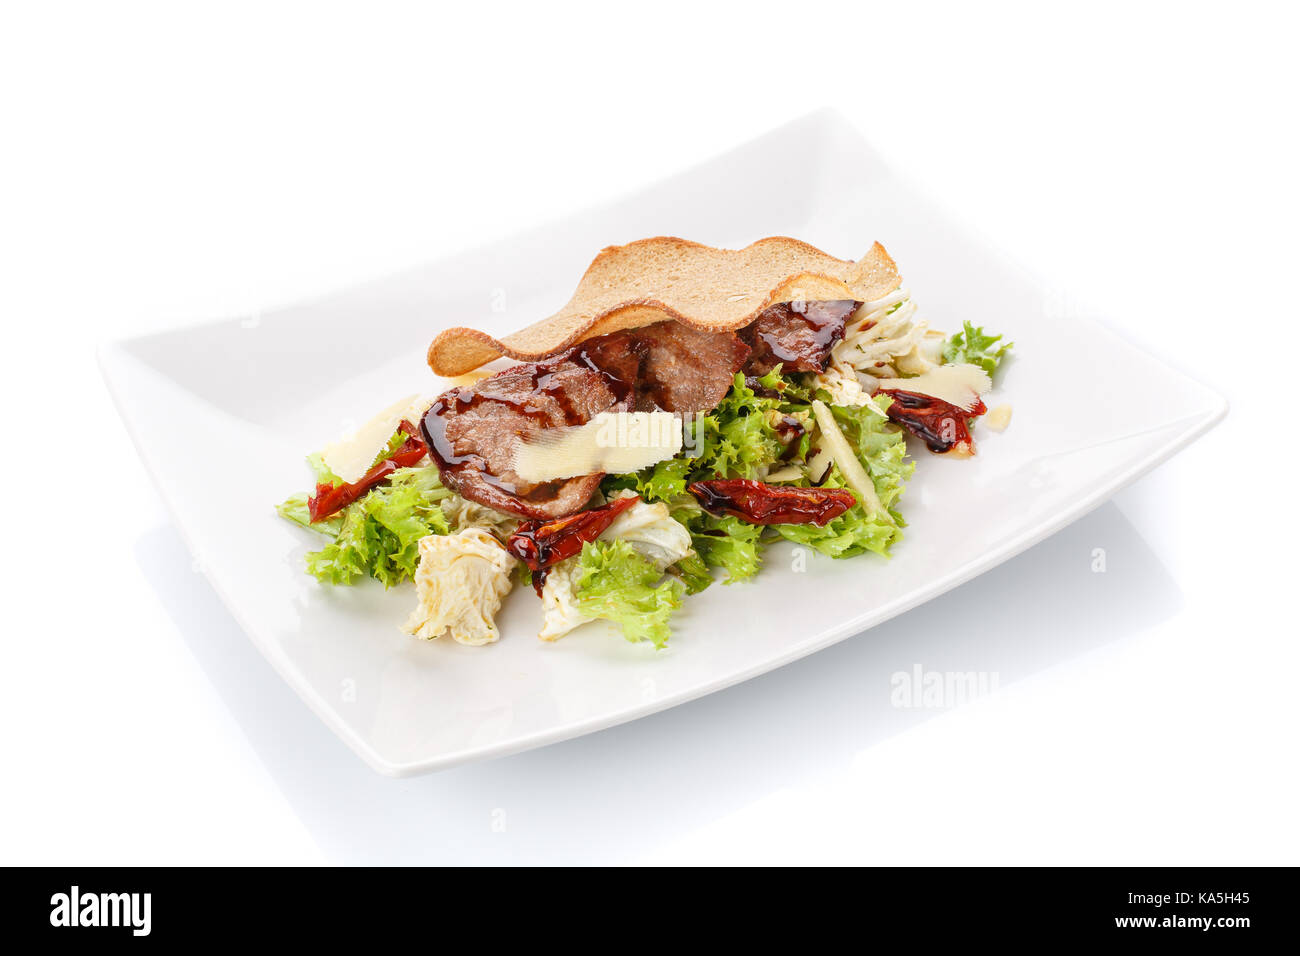 Das Essen im Restaurant. Salat mit Brot in einem Teller. Leckeres Essen. Stockfoto